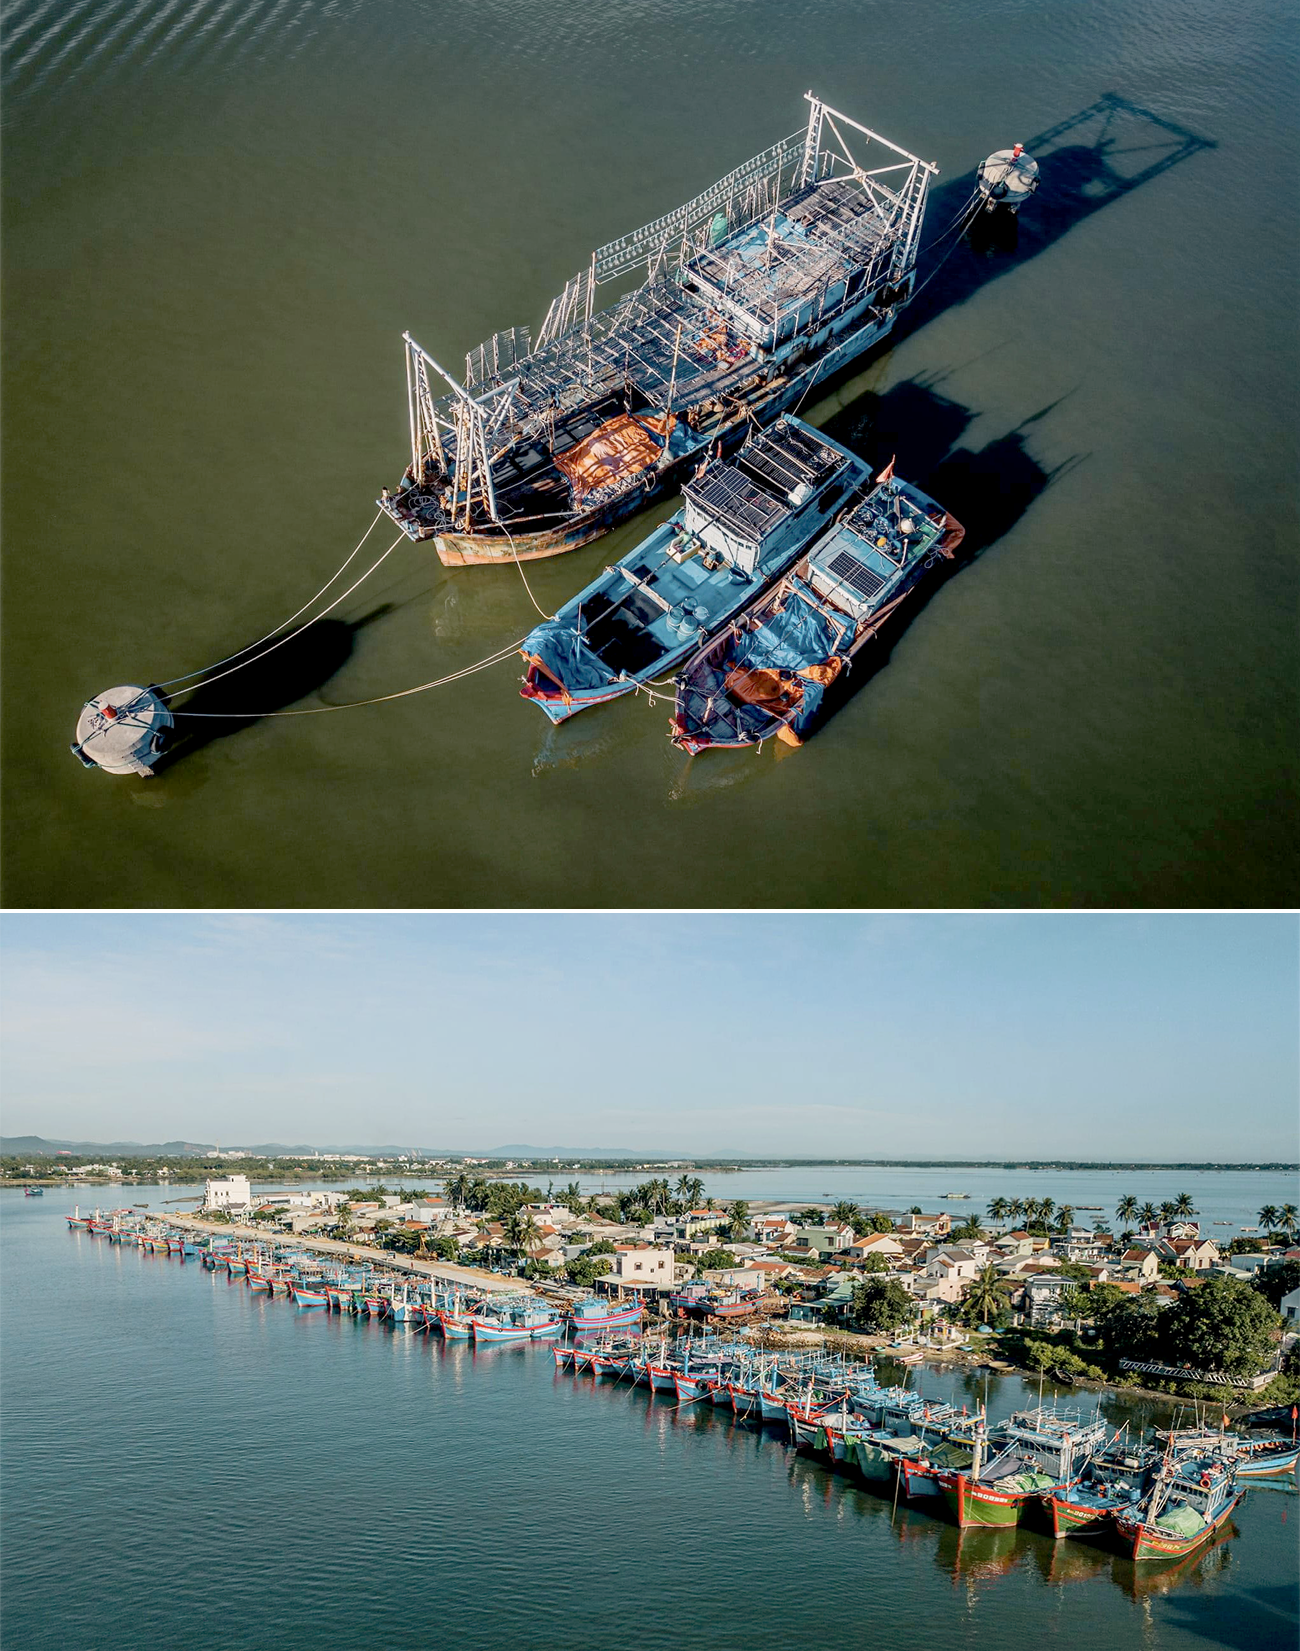 Gần đây, Quảng Nam quan tâm đầu tư cơ sở hạ tầng nghề cá, nhất là các cảng cá, nơi neo đậu tàu thuyền. Ảnh: H.P